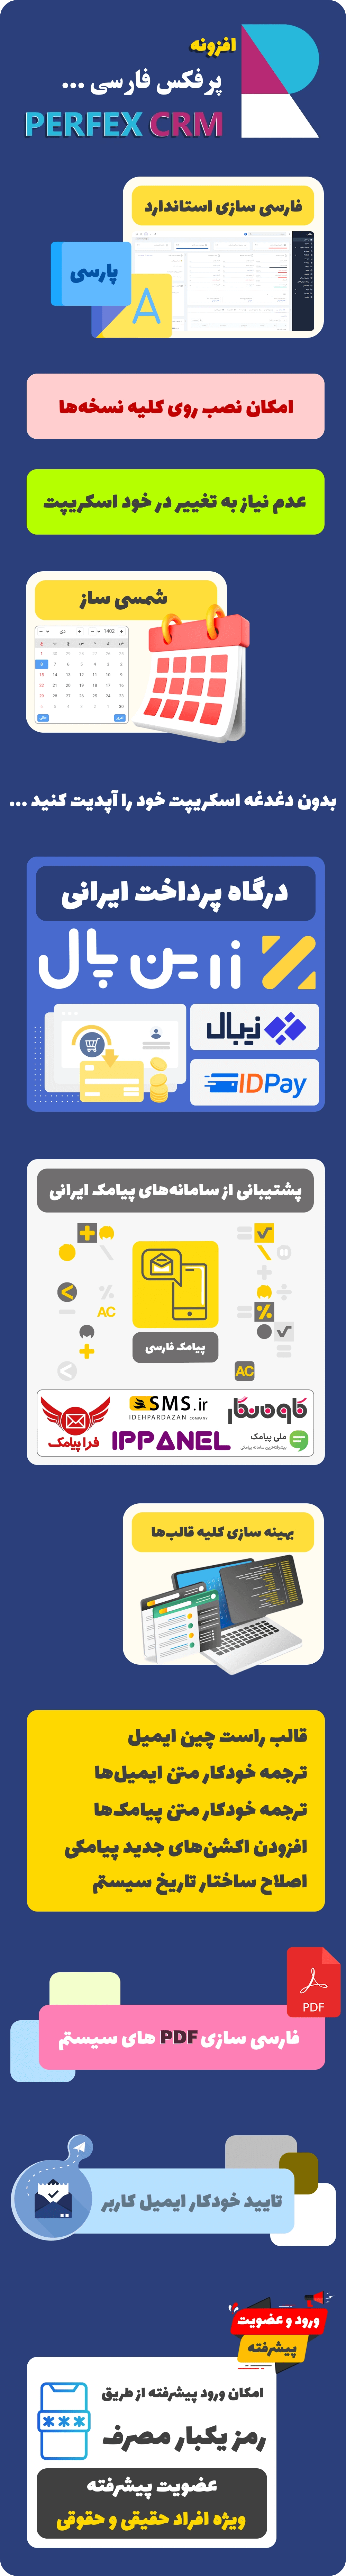 امکانات و قابلیت های ماژوال فارسی ساز اسکریپت Perfex CRM